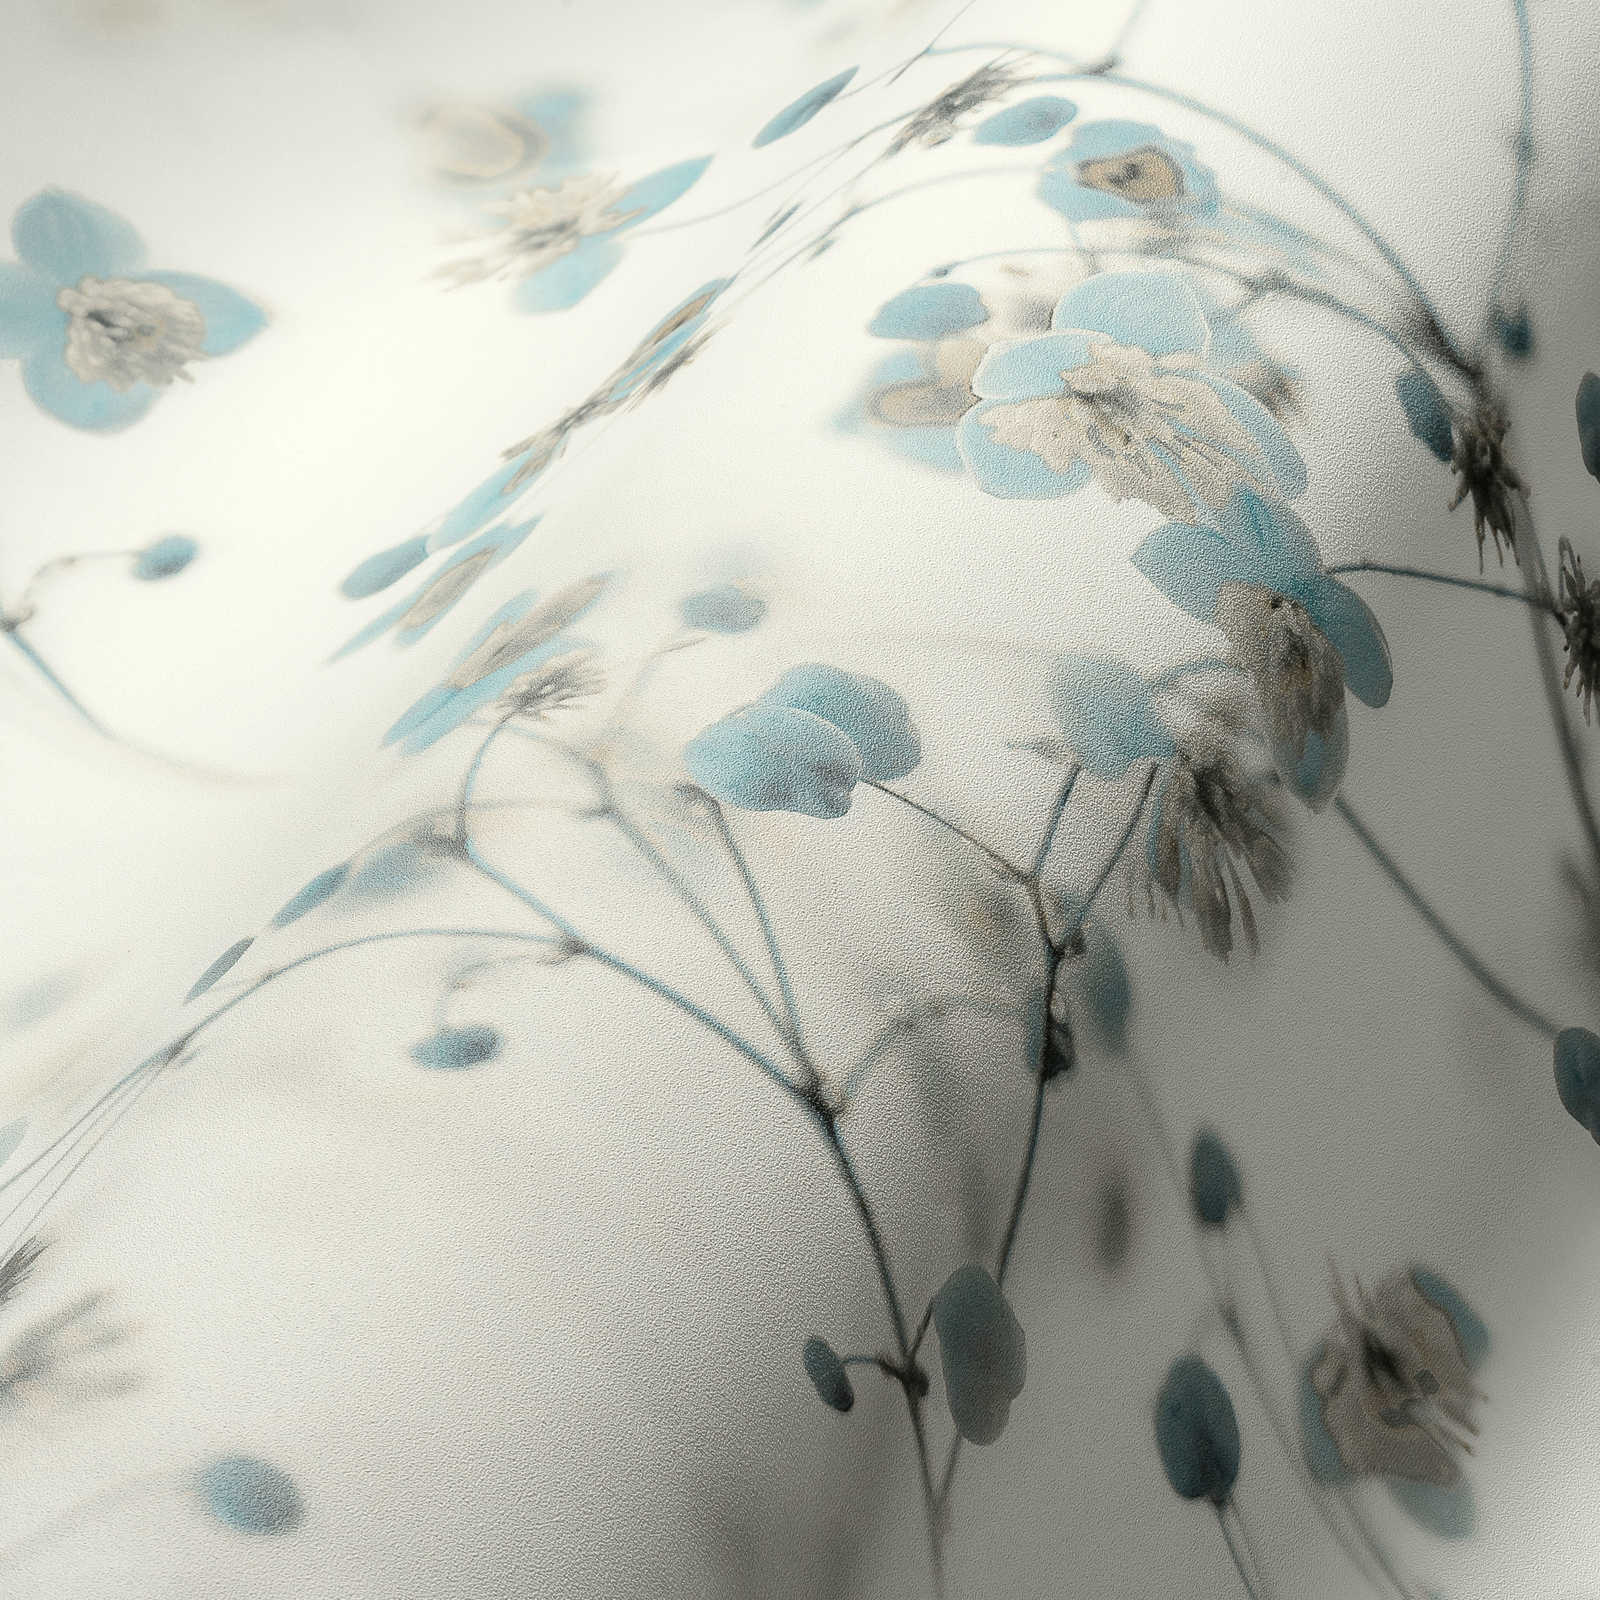             Romantische Blumentapete Fotocollage Stil – Grau, Blau
        